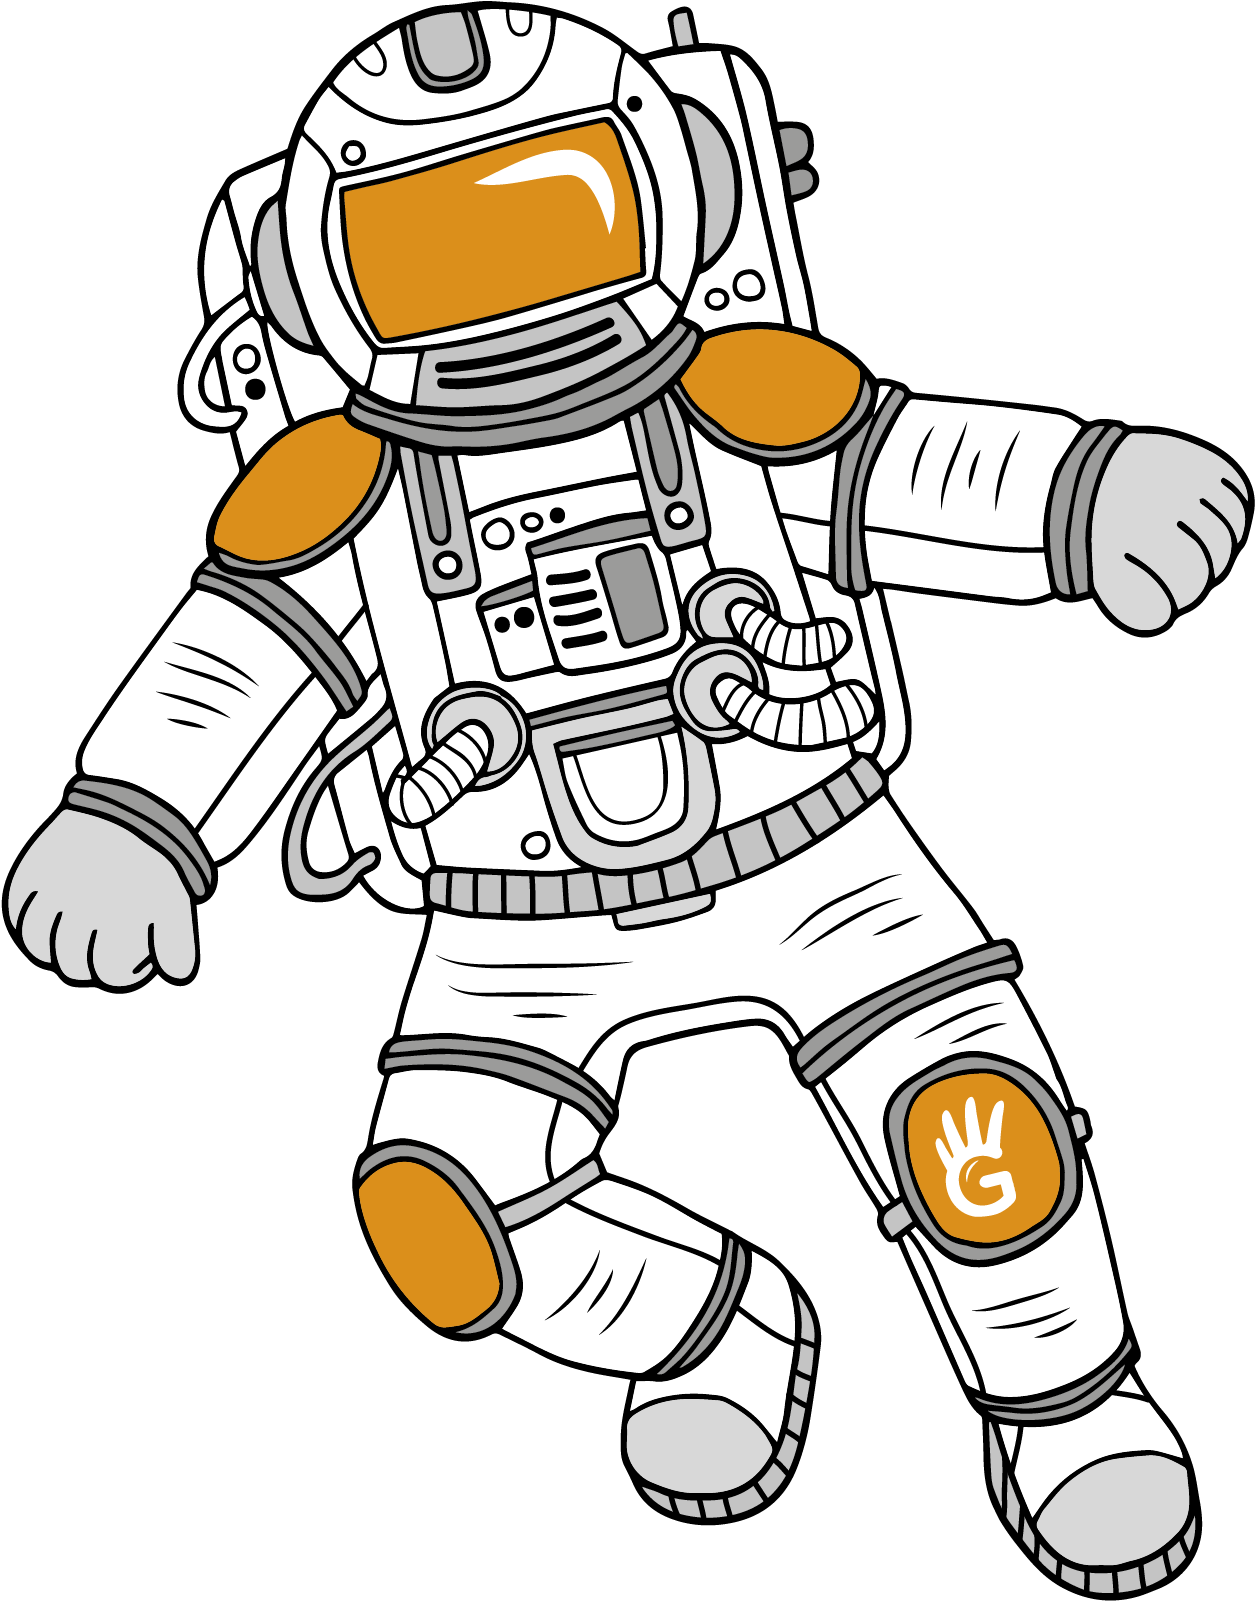 Astronaut Cartoon Illustration